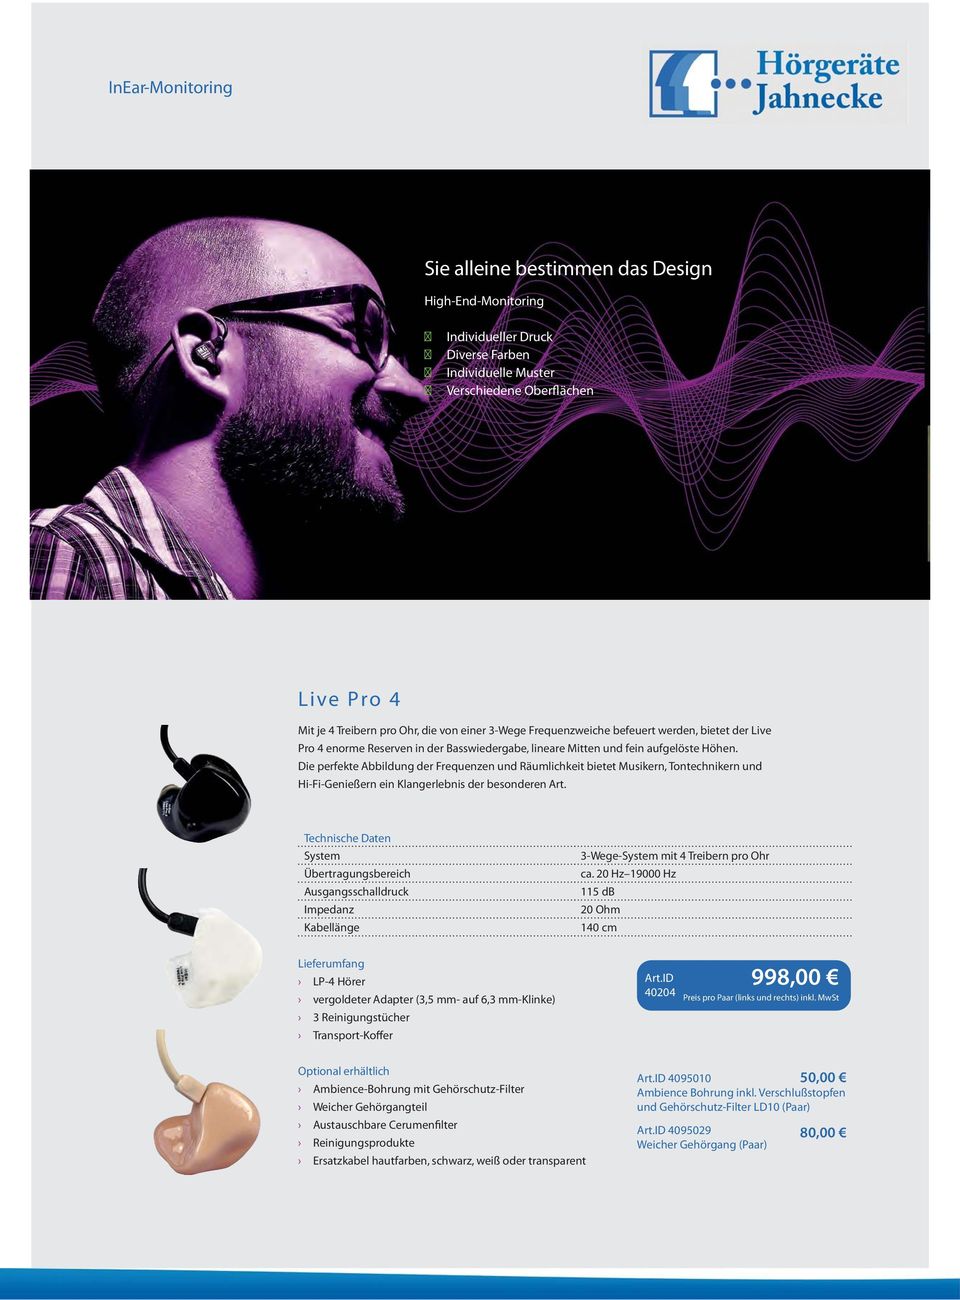 Die perfekte Abbildung der Frequenzen und Räumlichkeit bietet Musikern, Tontechnikern und Hi-Fi-Genießern ein Klangerlebnis der besonderen Art. Übertragungsbereich 3-Wege- mit 4 Treibern pro Ohr ca.